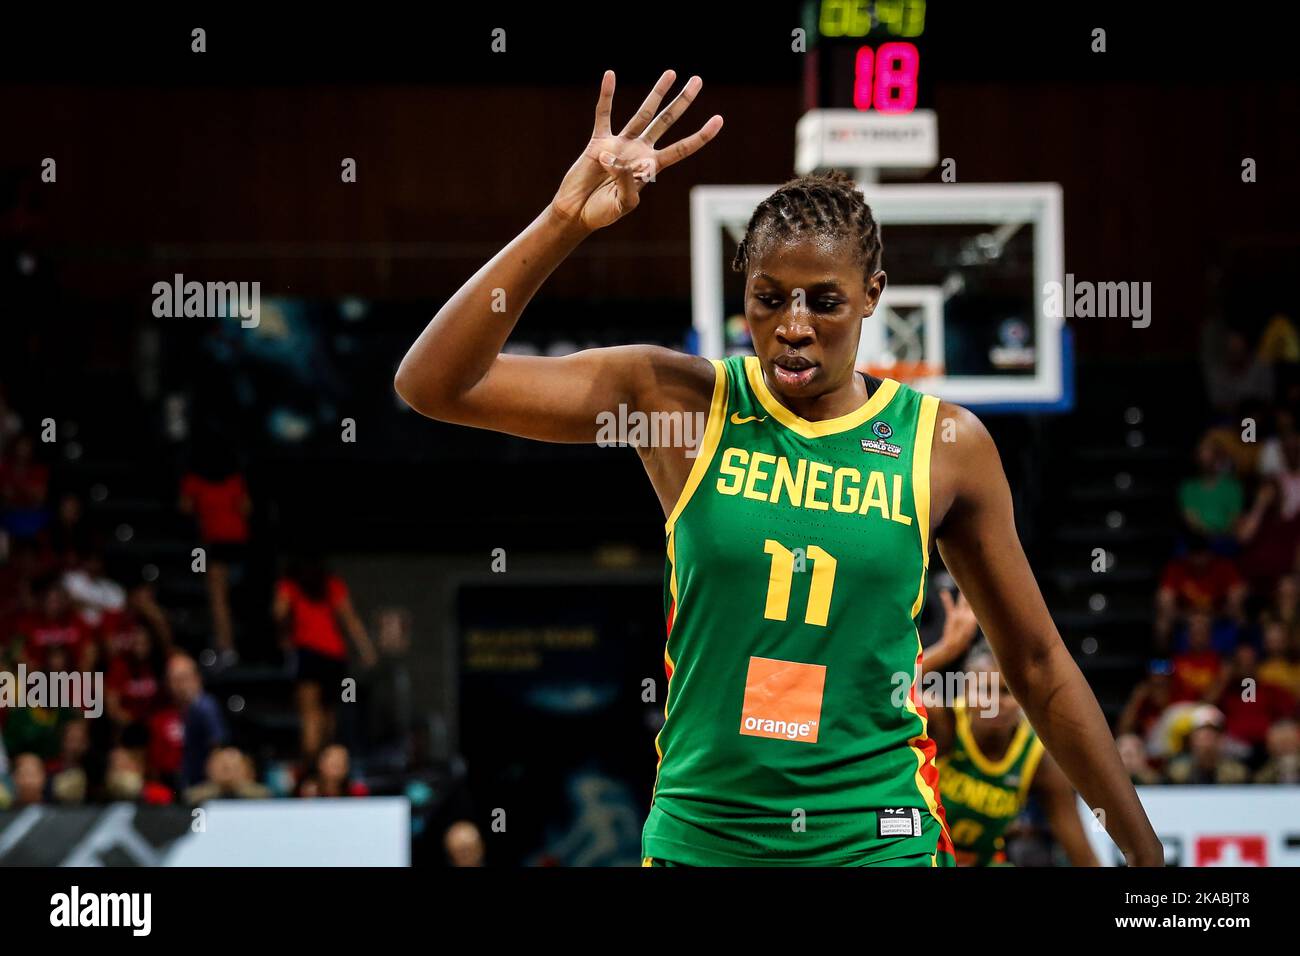 Espagne, Ténérife, 26 septembre 2018: Maïmouna Diarra, joueuse de basket-ball sénégalaise, lors de la coupe du monde de basket-ball féminin de la FIBA Banque D'Images